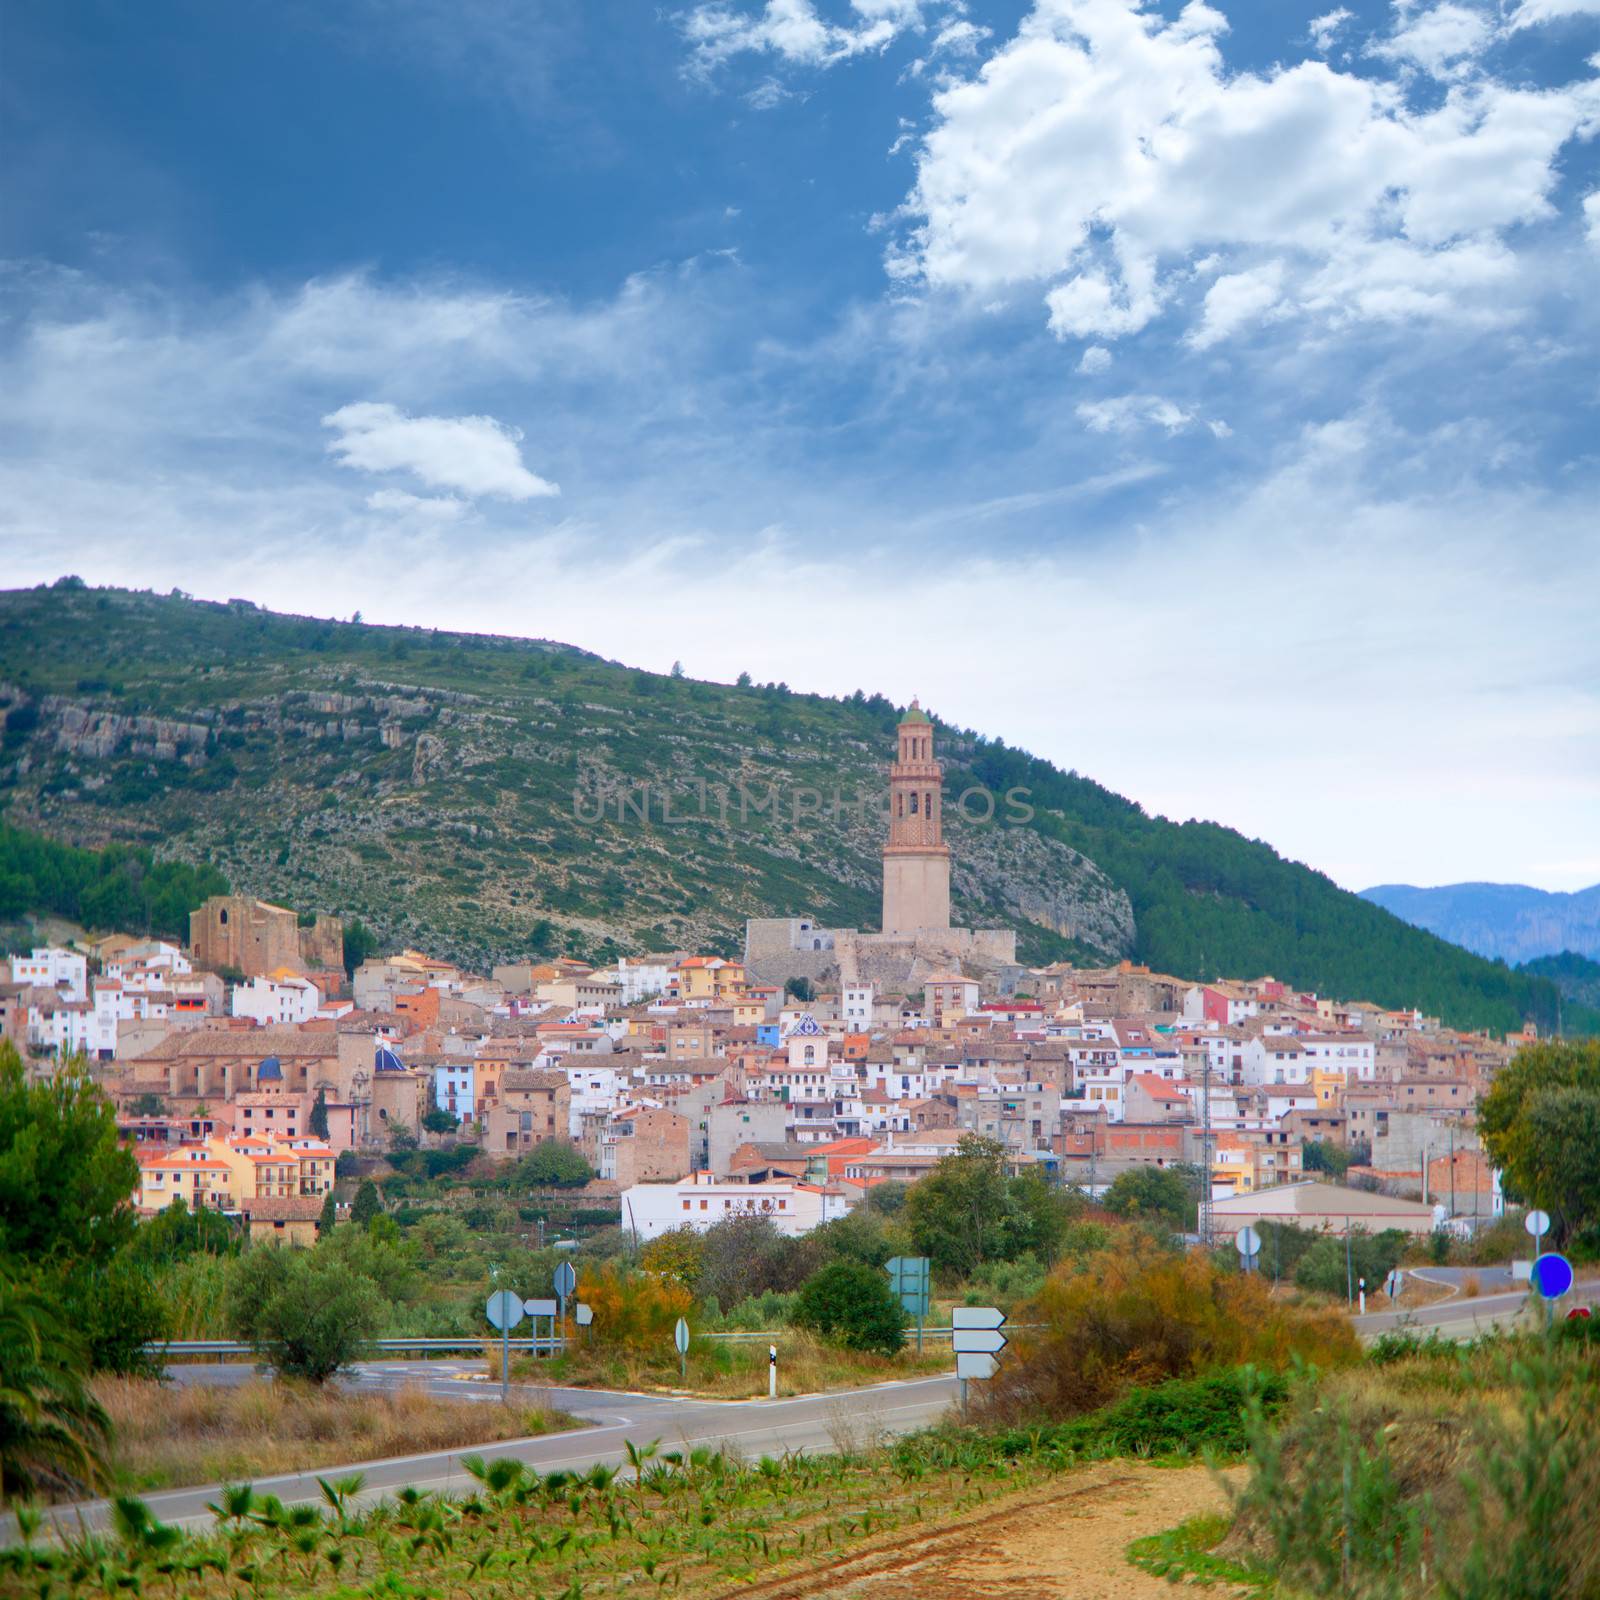 Jerica village Castellon cityscape in Spain by lunamarina